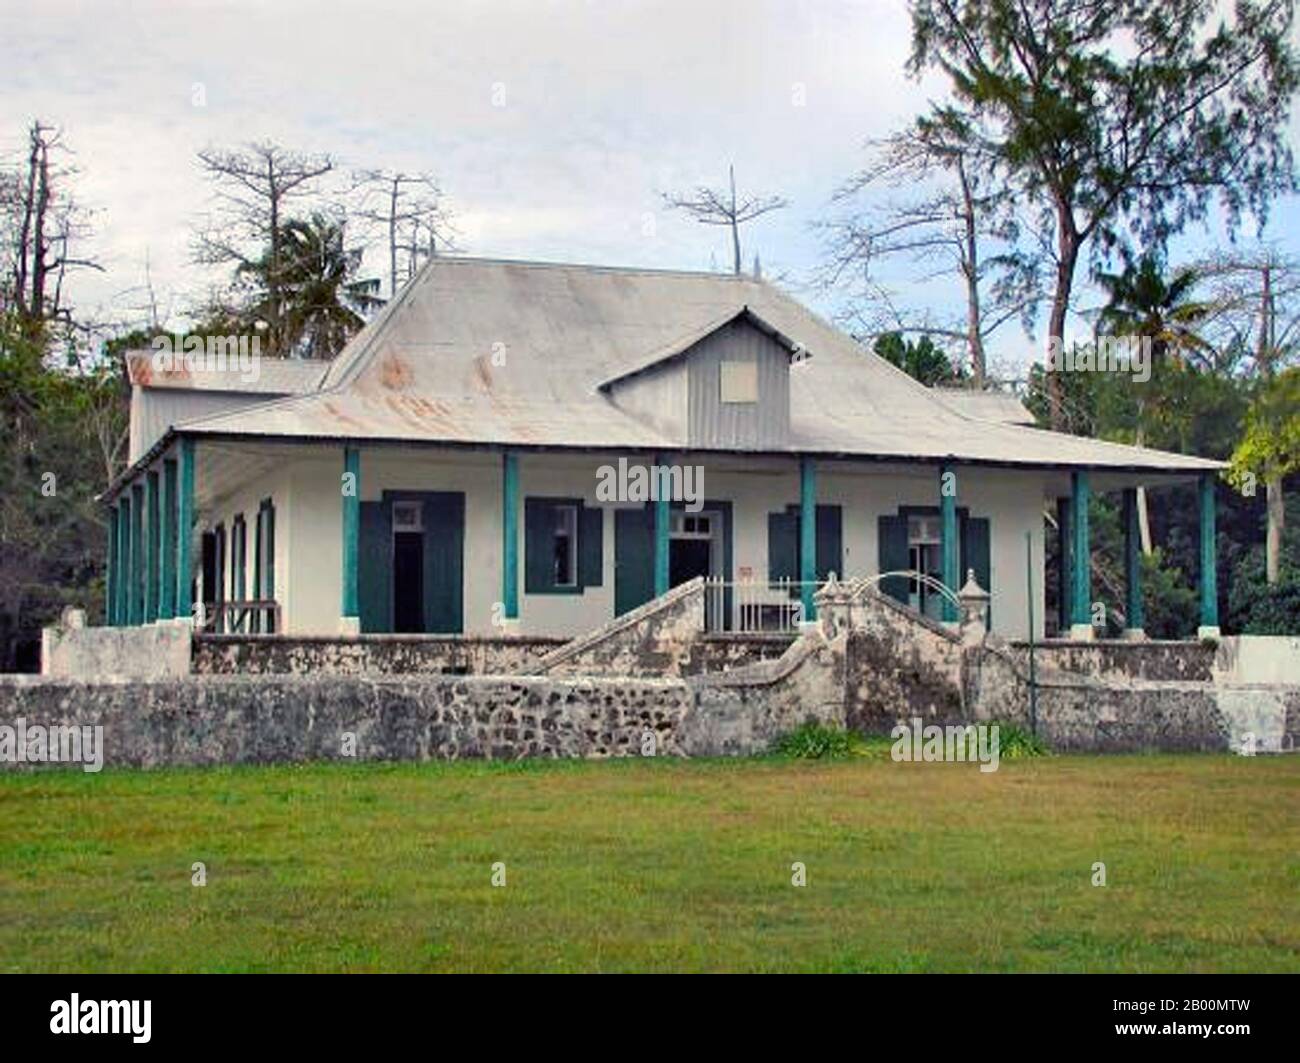 BIOT (Britisches Territorium im Indischen Ozean): Ariel House. Das Britische Territorium im Indischen Ozean (BIOT) oder Chagos-Inseln (früher die Ölinseln) ist ein Überseegebiet des Vereinigten Königreichs, das im Indischen Ozean liegt, auf halbem Weg zwischen Afrika und Indonesien. Das Gebiet umfasst eine Gruppe von sieben Atollen, die mehr als 60 einzelne Inseln umfassen und etwa 500 Kilometer (310 Meilen) südlich des Archipels der Malediven liegen. Die größte Insel ist Diego Garcia (Fläche 44 km Quadrat), der Ort einer gemeinsamen militärischen Anlage des Vereinigten Königreichs und der Vereinigten Staaten. Stockfoto